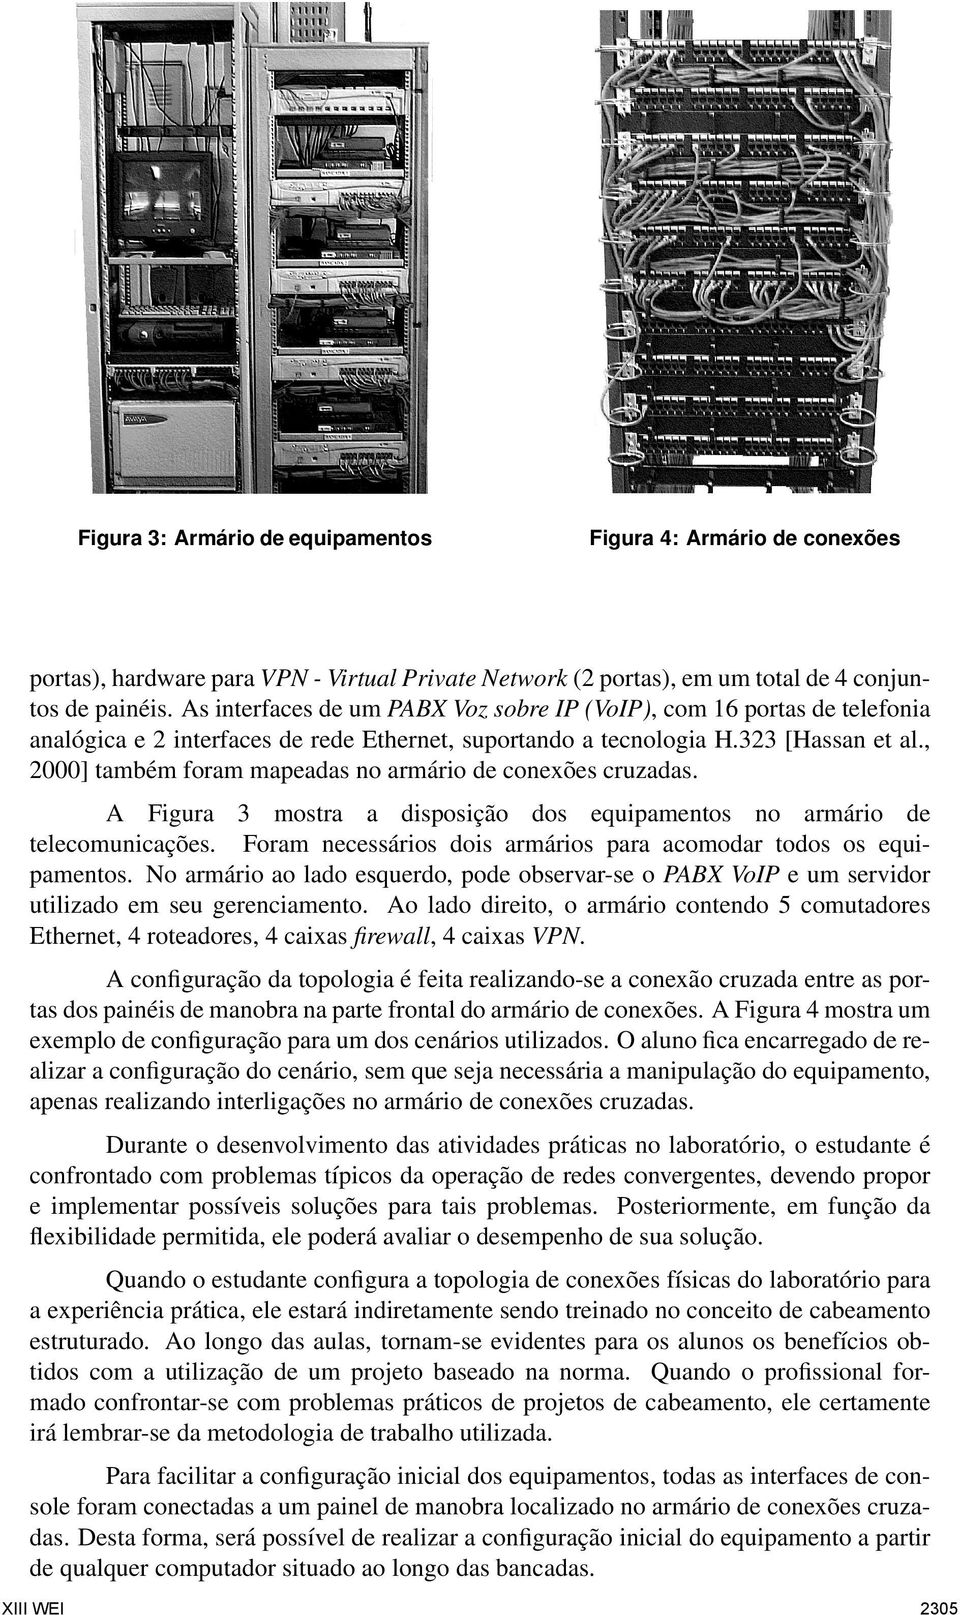 , 2000] também foram mapeadas no armário de conexões cruzadas. A Figura 3 mostra a disposição dos equipamentos no armário de telecomunicações.